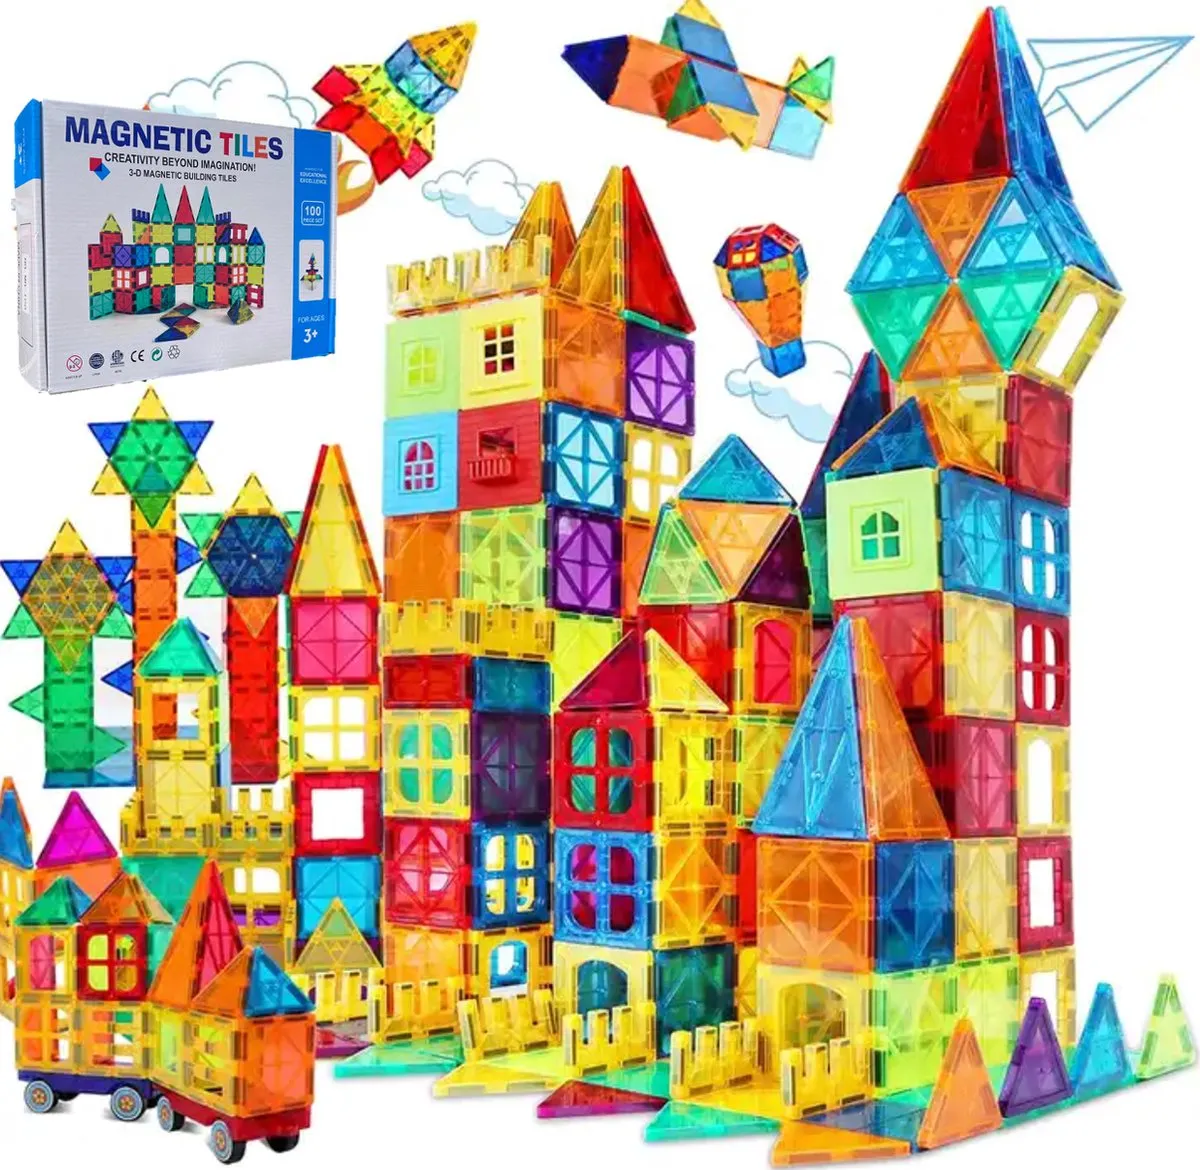 Sophie's Planet - Magnetic Tiles - Magnetisch Speelgoed – 100stuks - Constructie speelgoed - Magnetische tegels - Montessori speelgoed - magna tastisch speelgoed